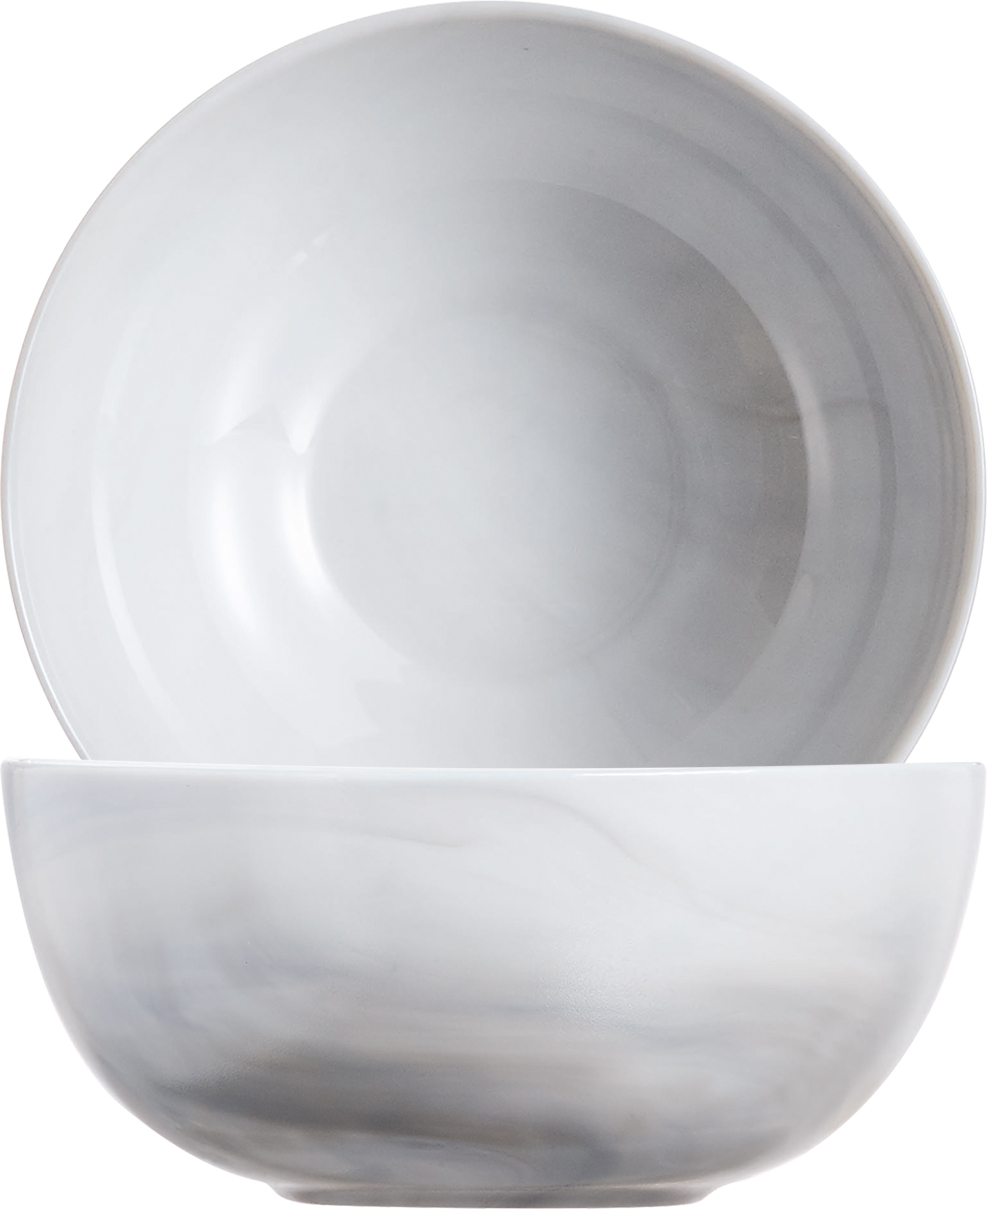 Schale DIWALI, Inhalt: 400 ml, Durchmesser: 12 cm, Farbe: granit